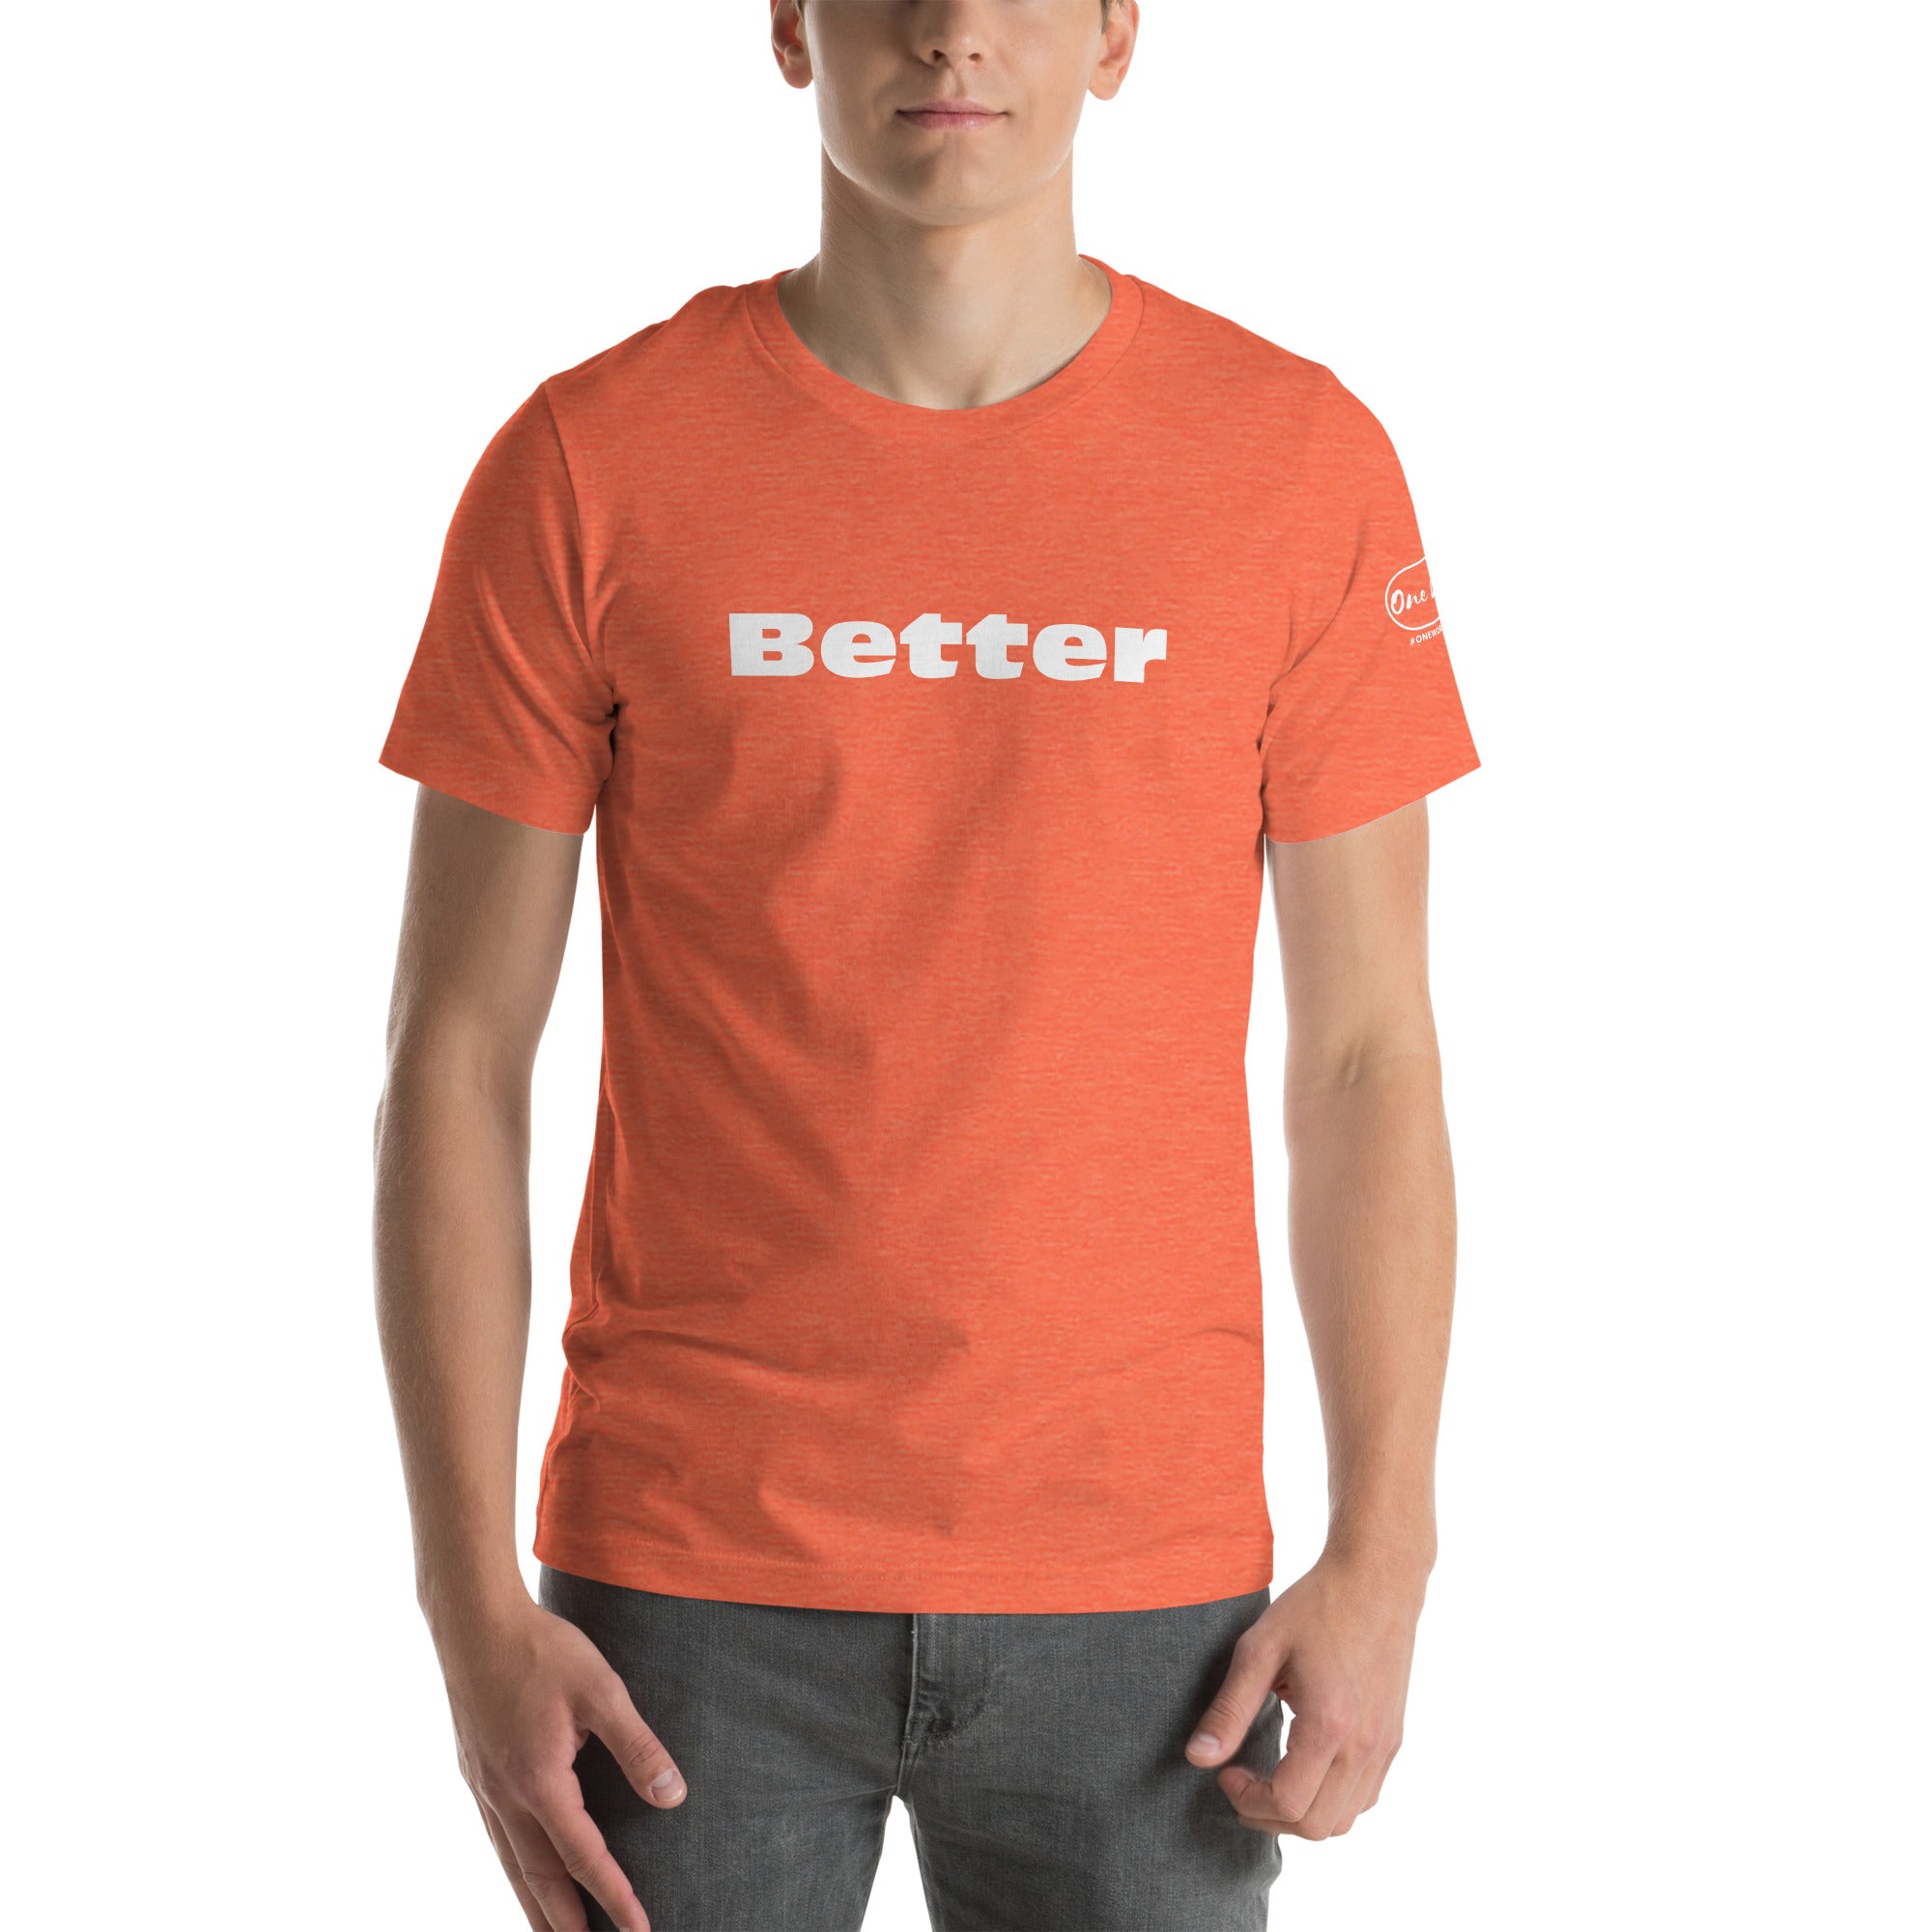 Camiseta mejor inspirada | Ropa de fe | Camiseta unisex de una palabra